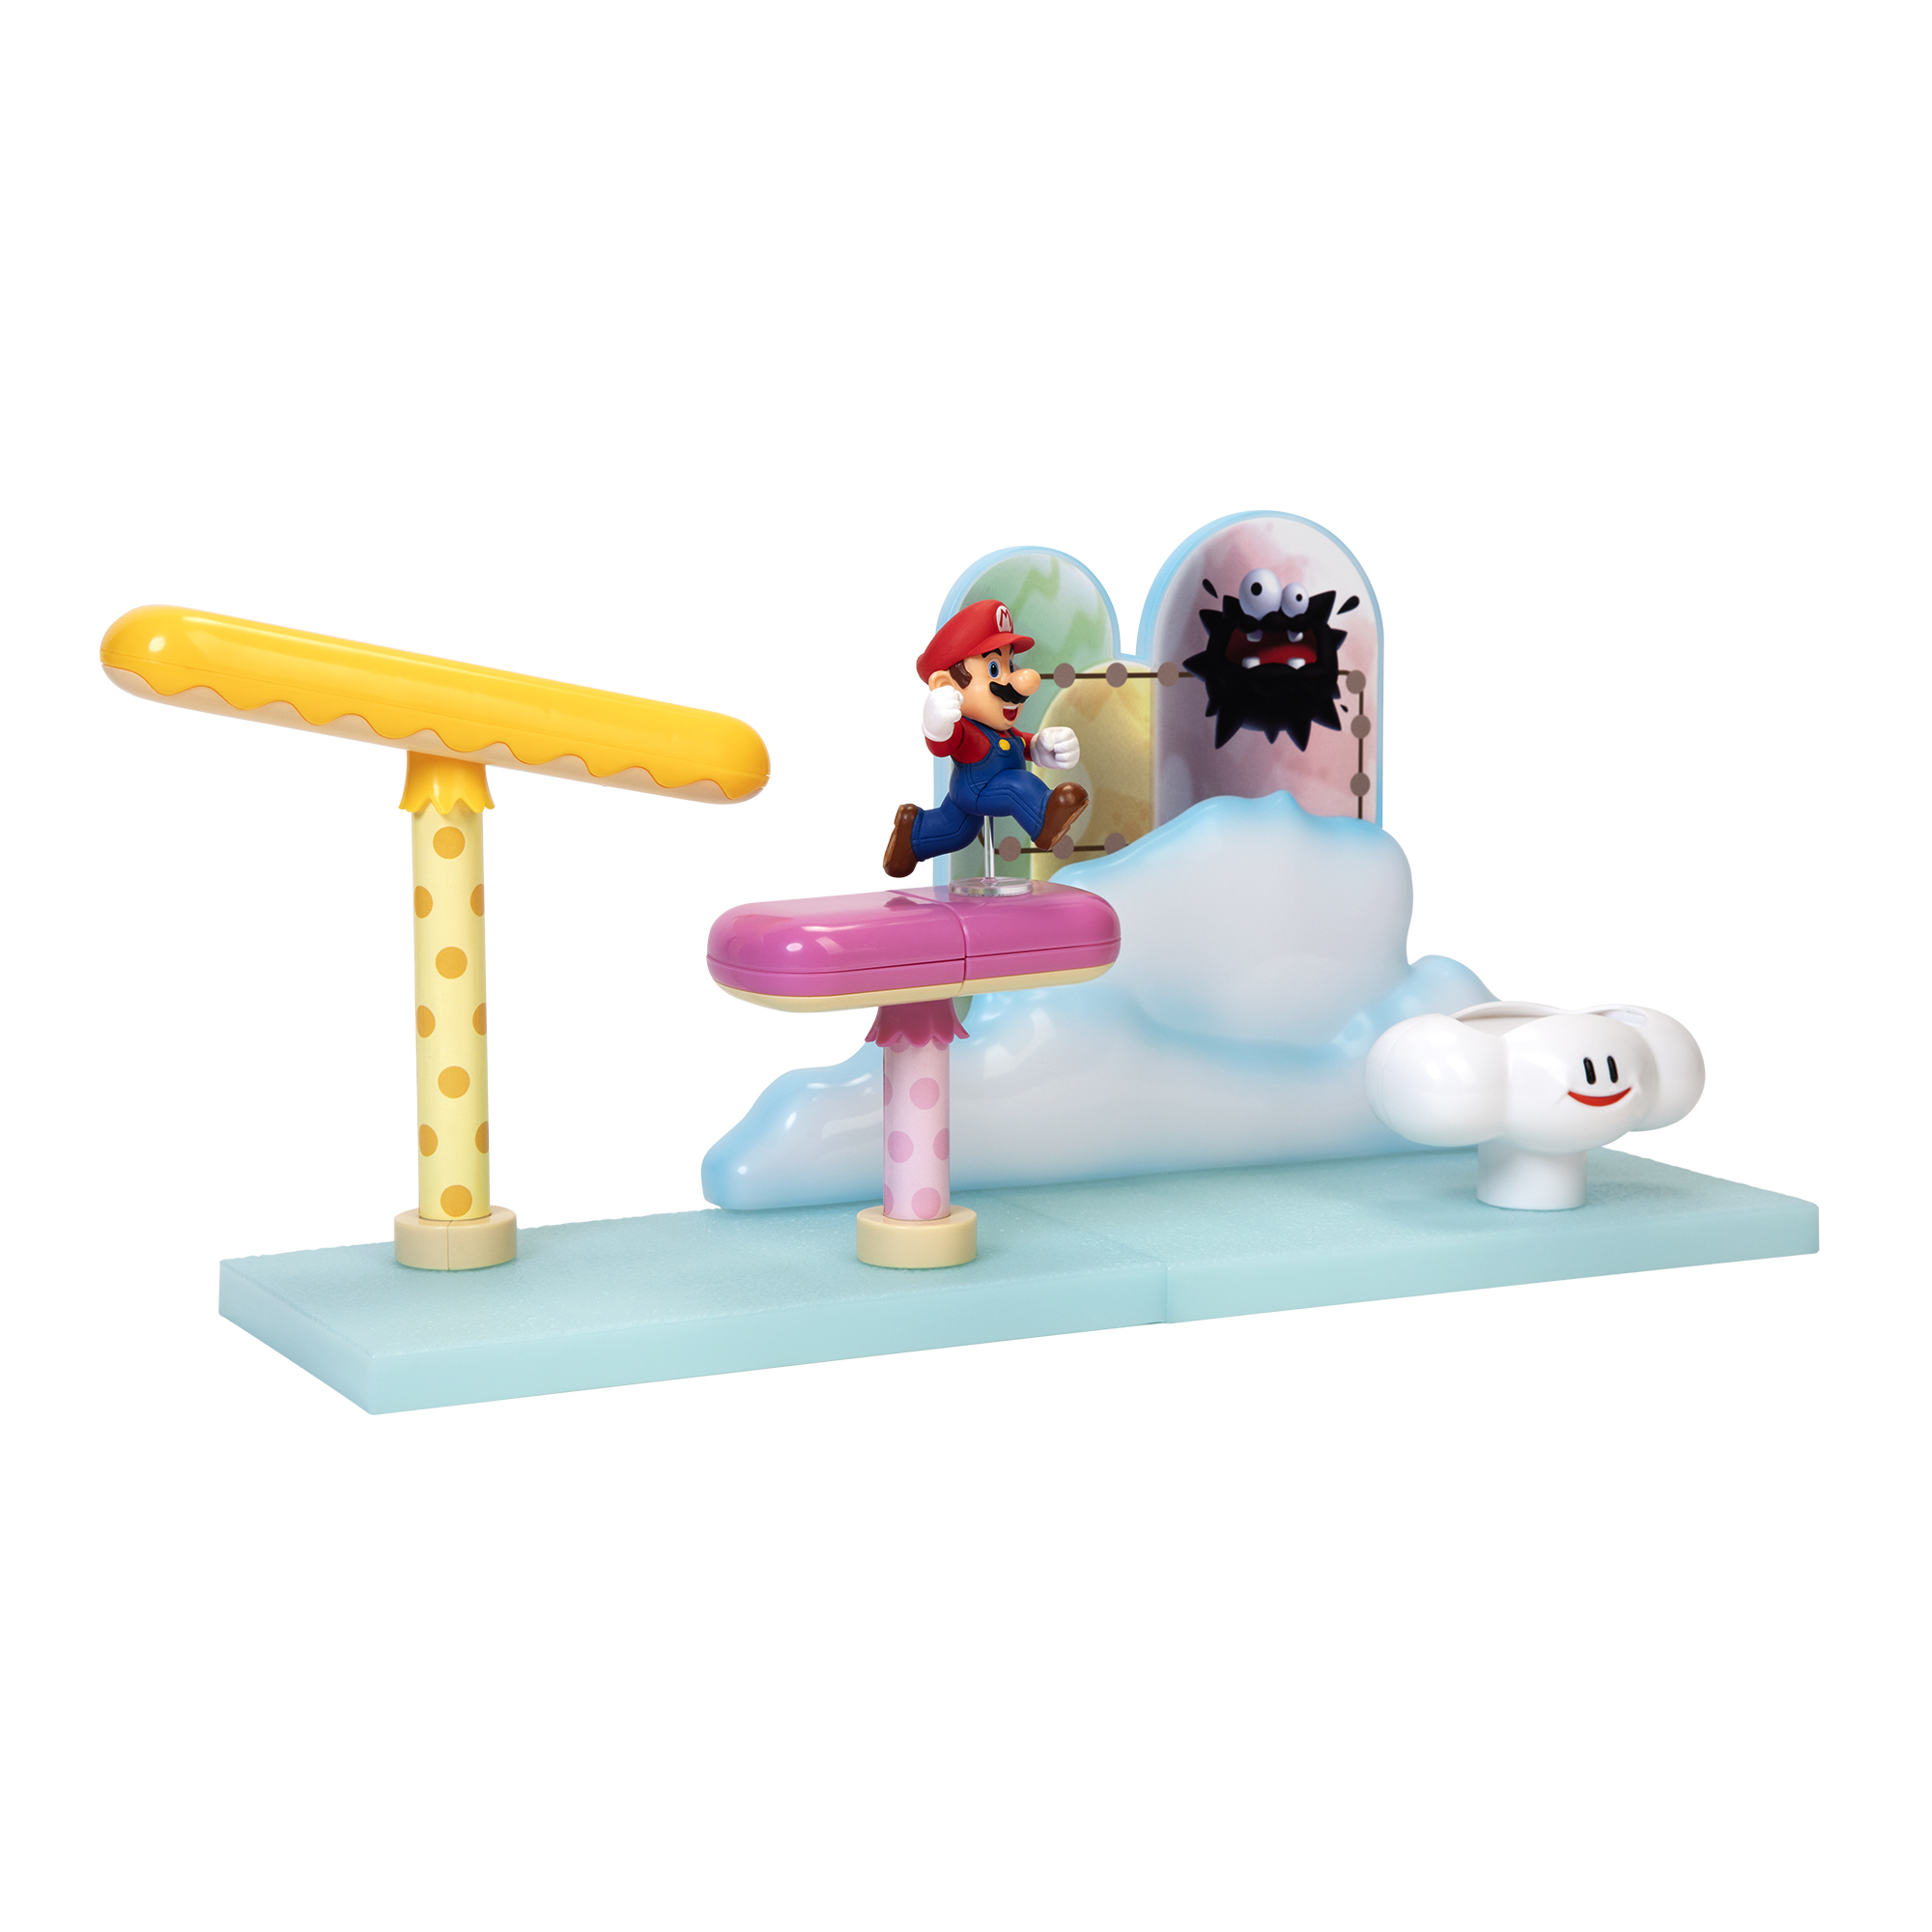 7 piezas Spielware JAKKS incluido PACIFIC Nube Mario & Mario Playset Super